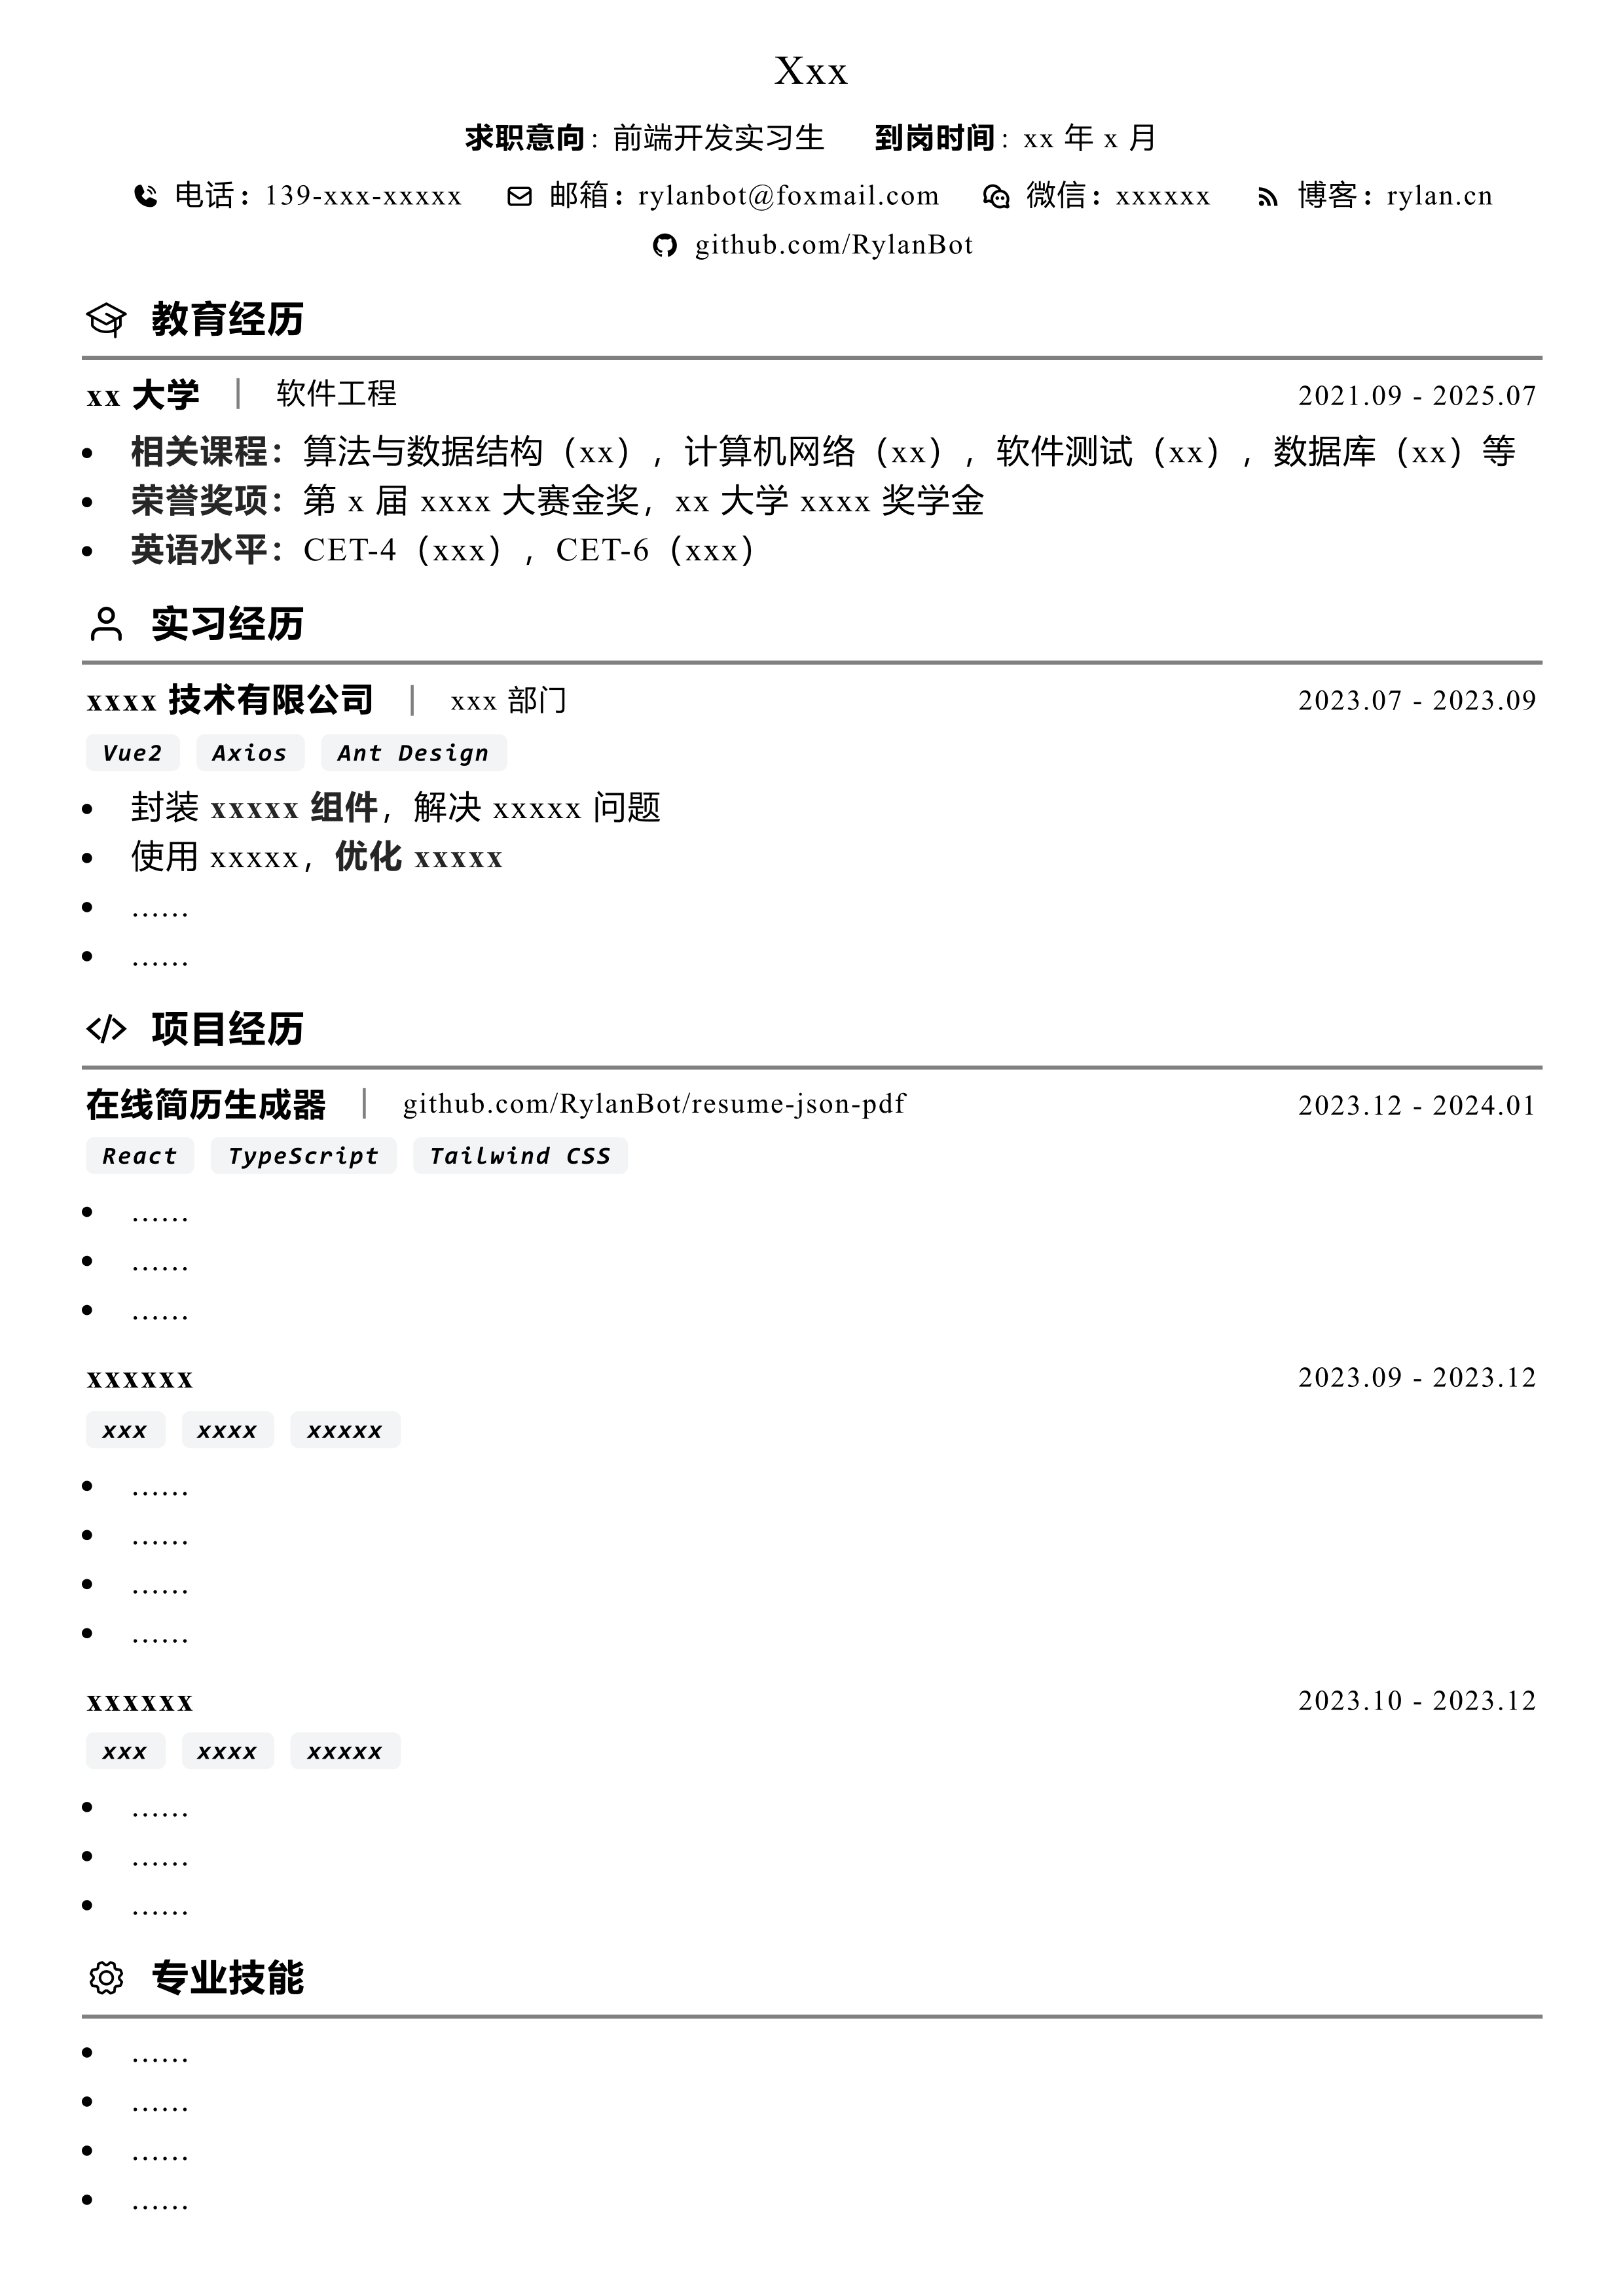 resume-json-pdf-plain-cn